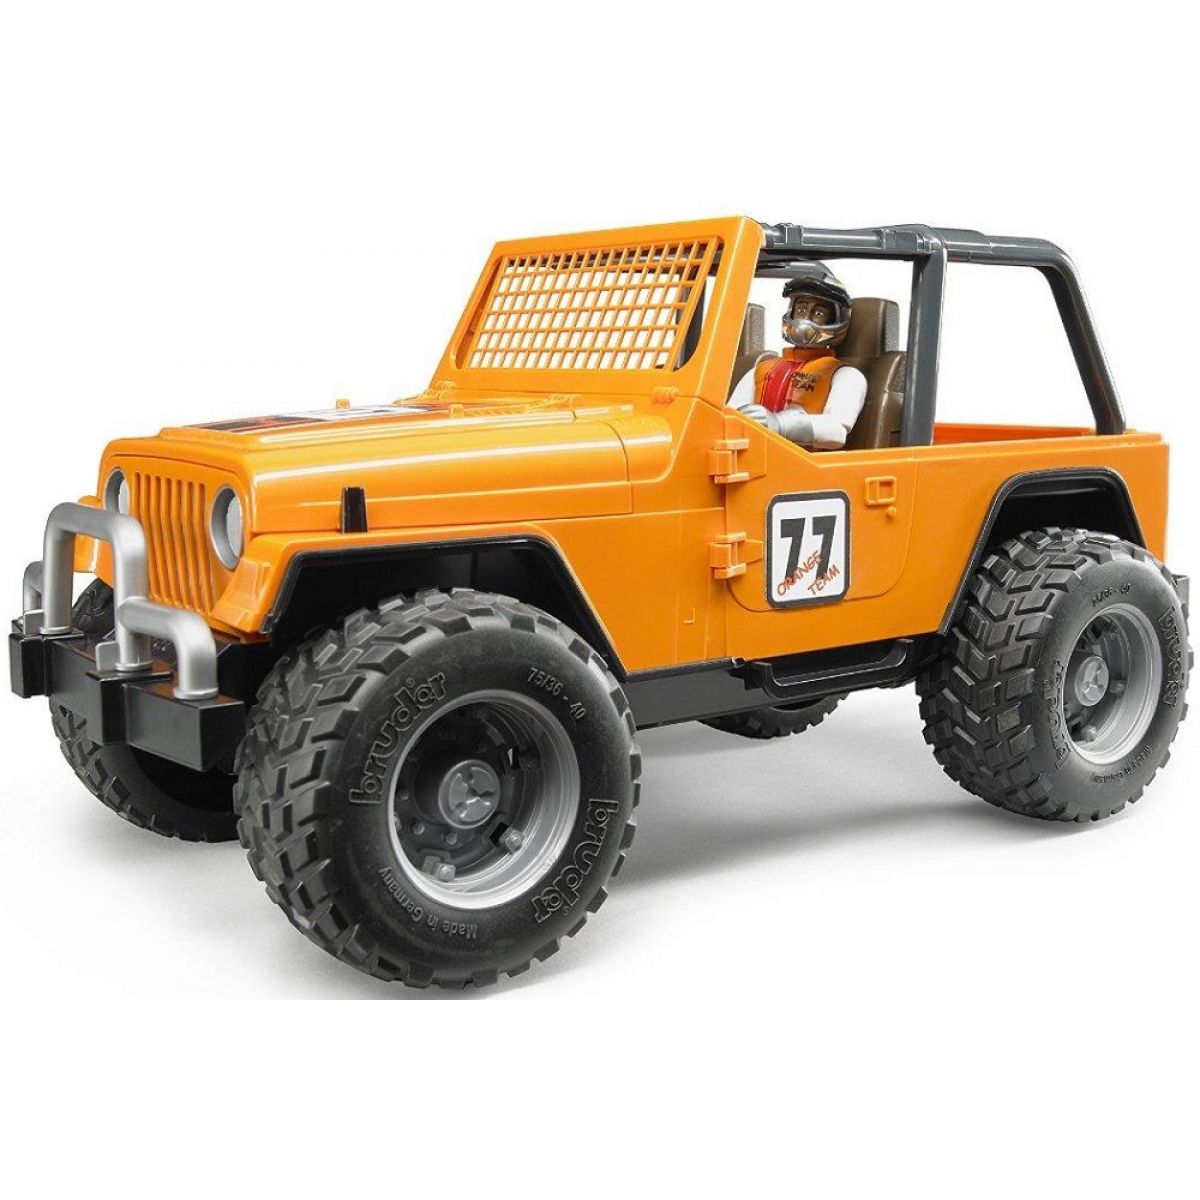 Bruder 02541 Jeep Cross Country oranžový s figurkou